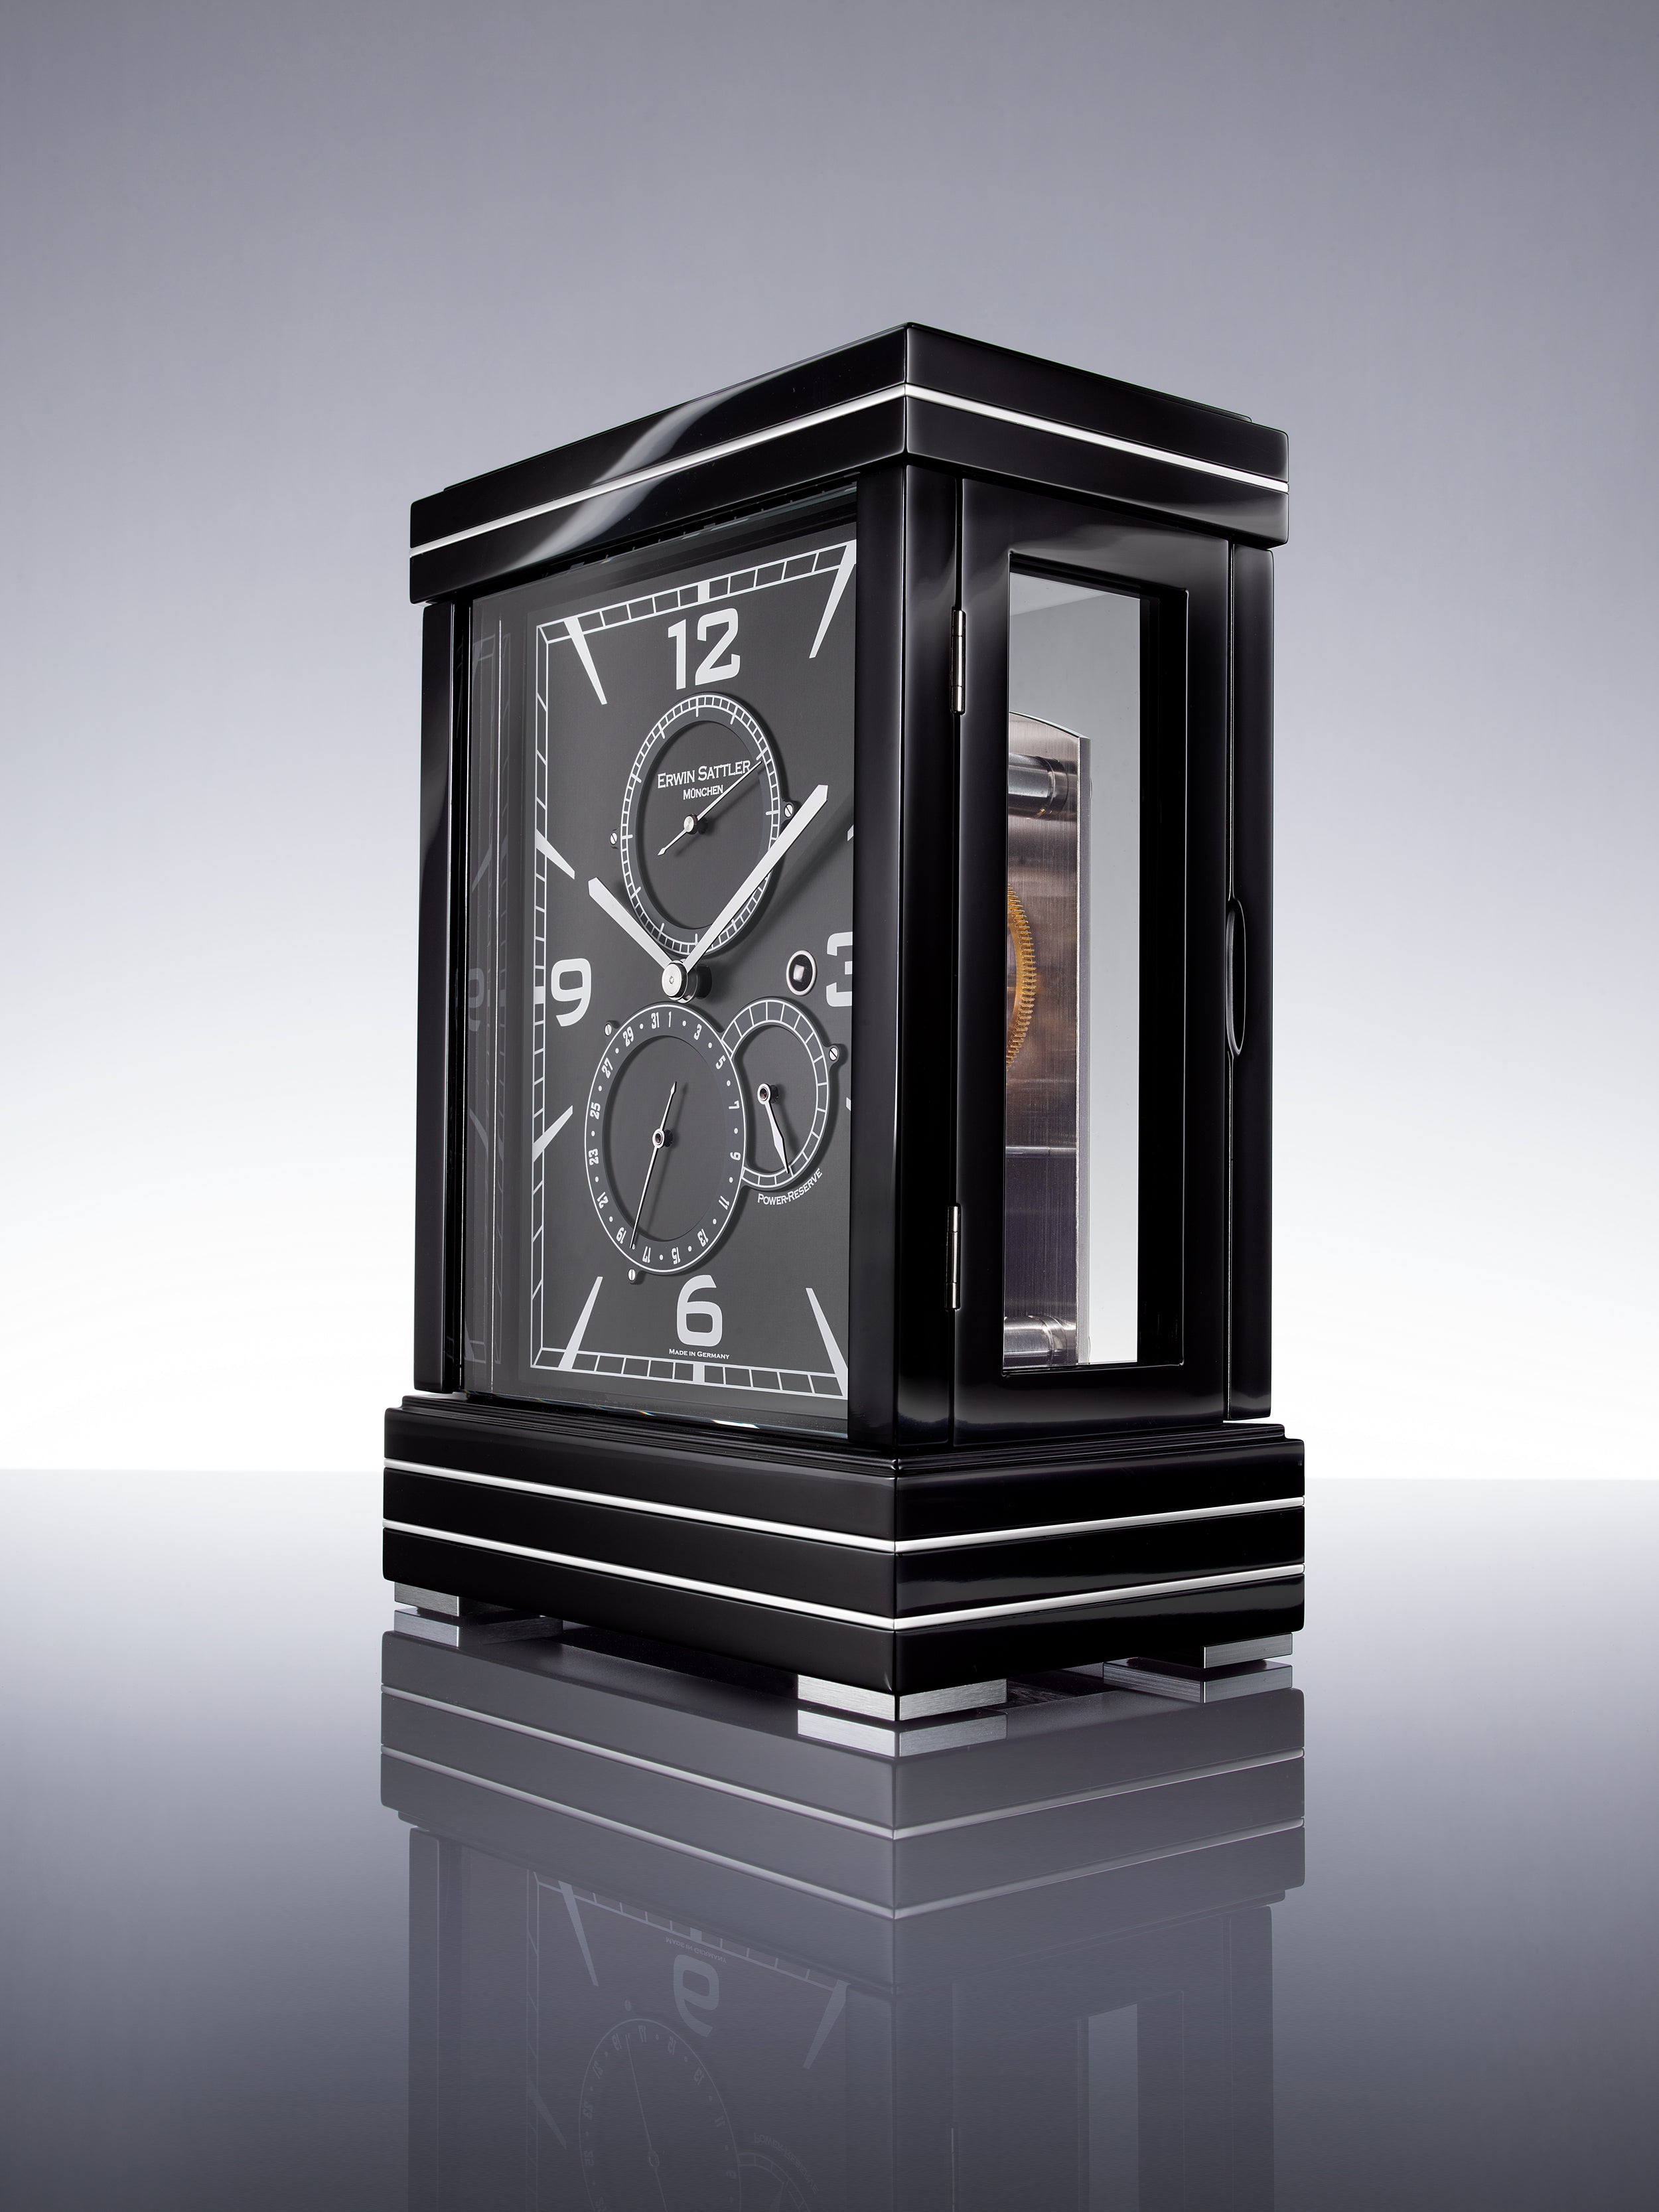 アンティーク時計erwin sattler modell 1504 - インテリア小物